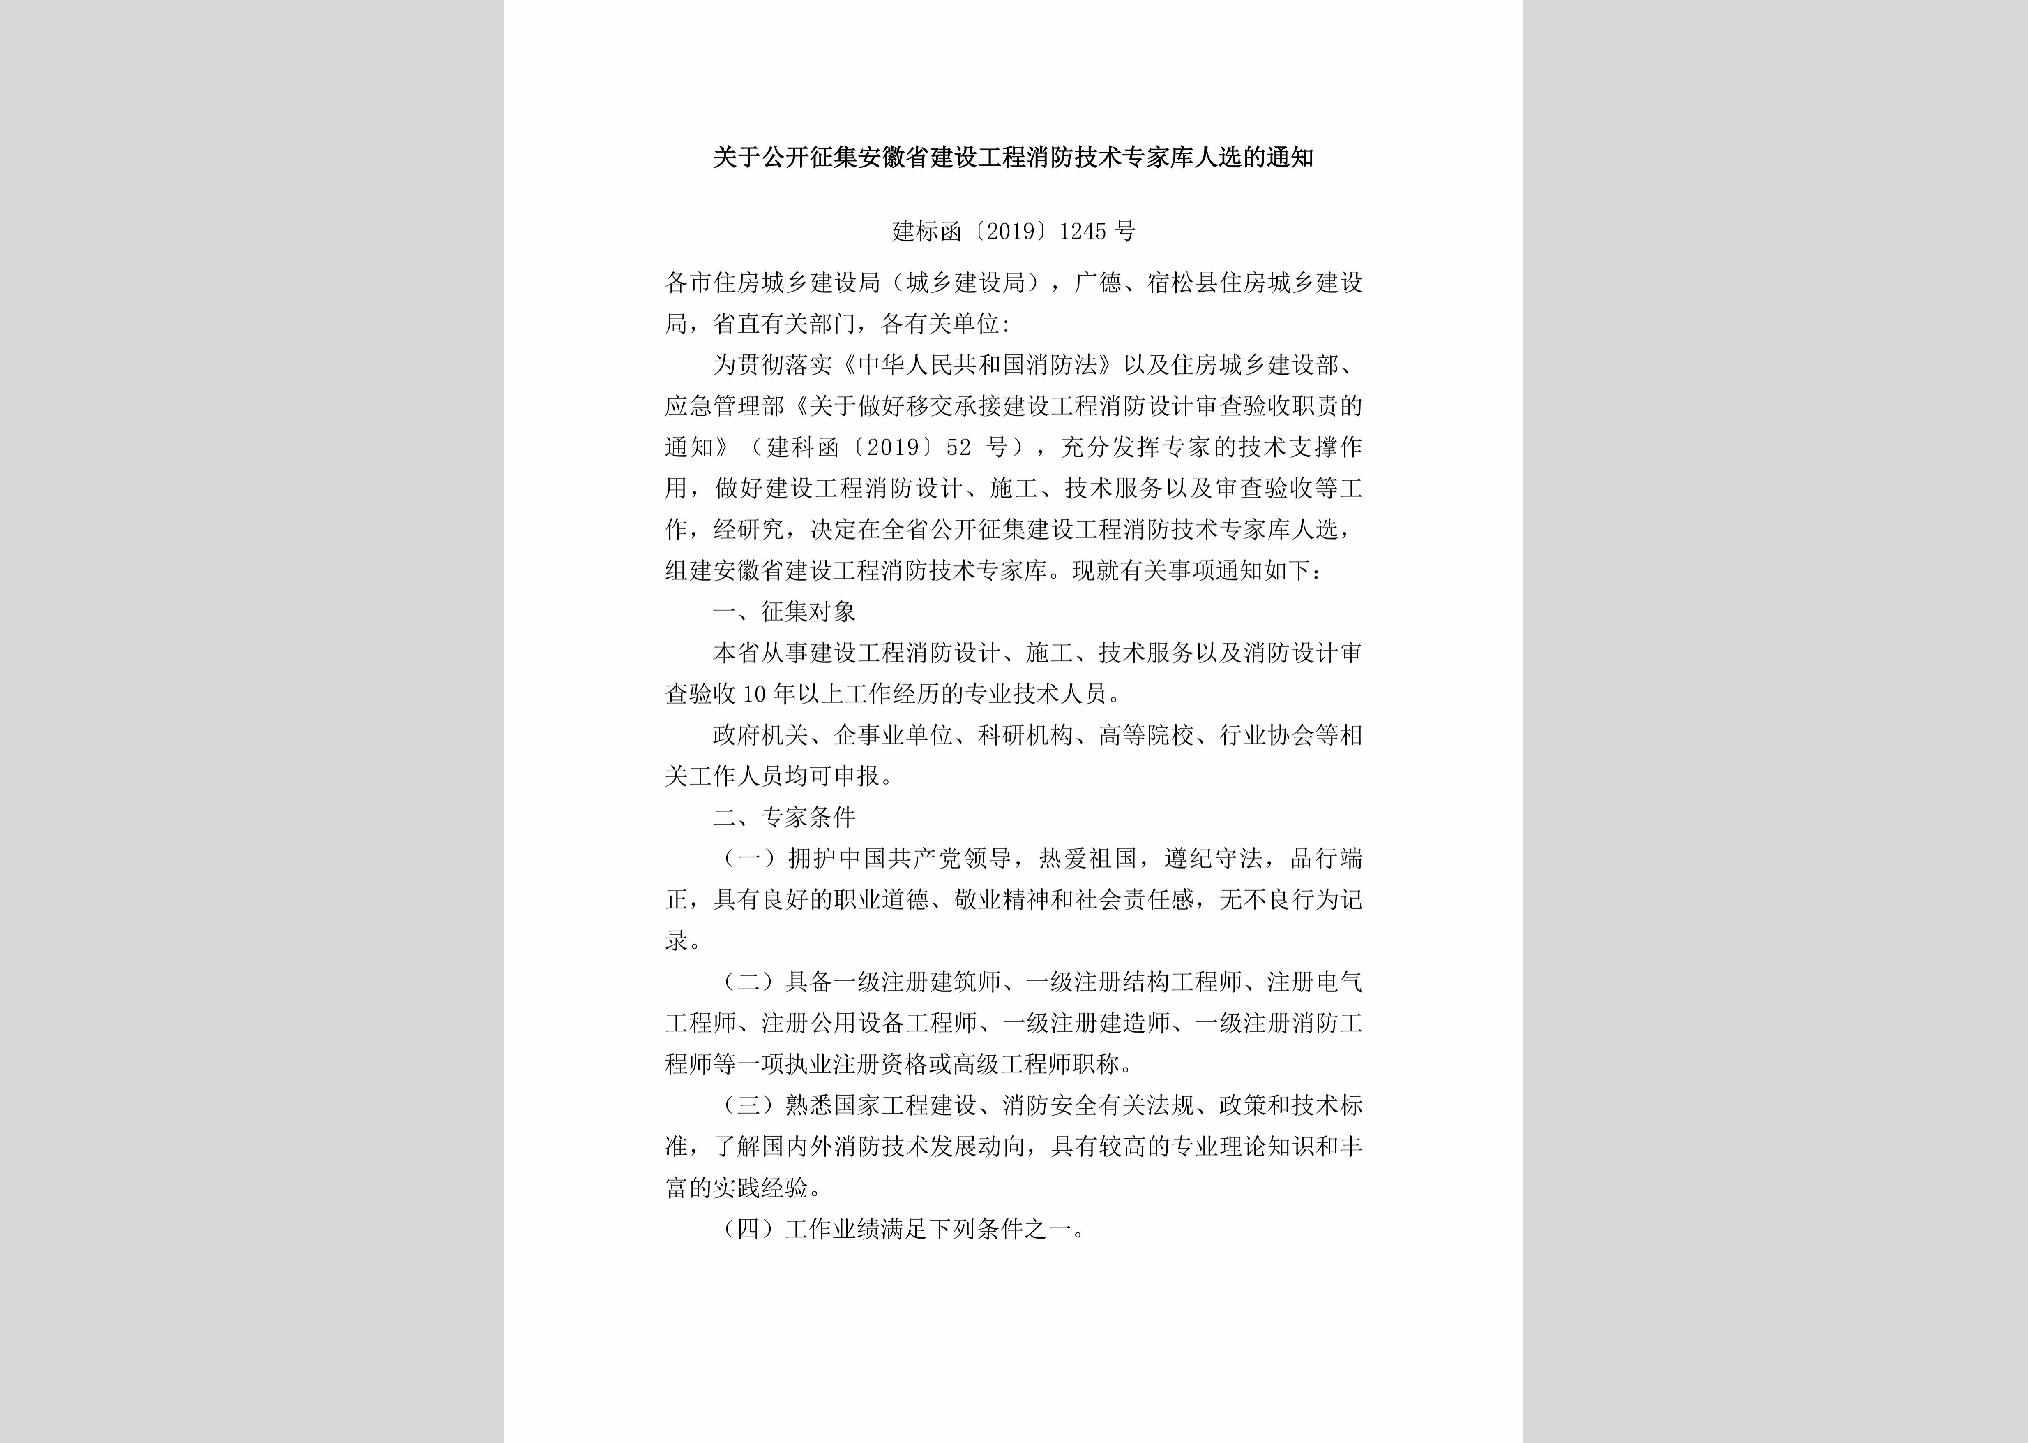 建标函[2019]1245号：关于公开征集安徽省建设工程消防技术专家库人选的通知